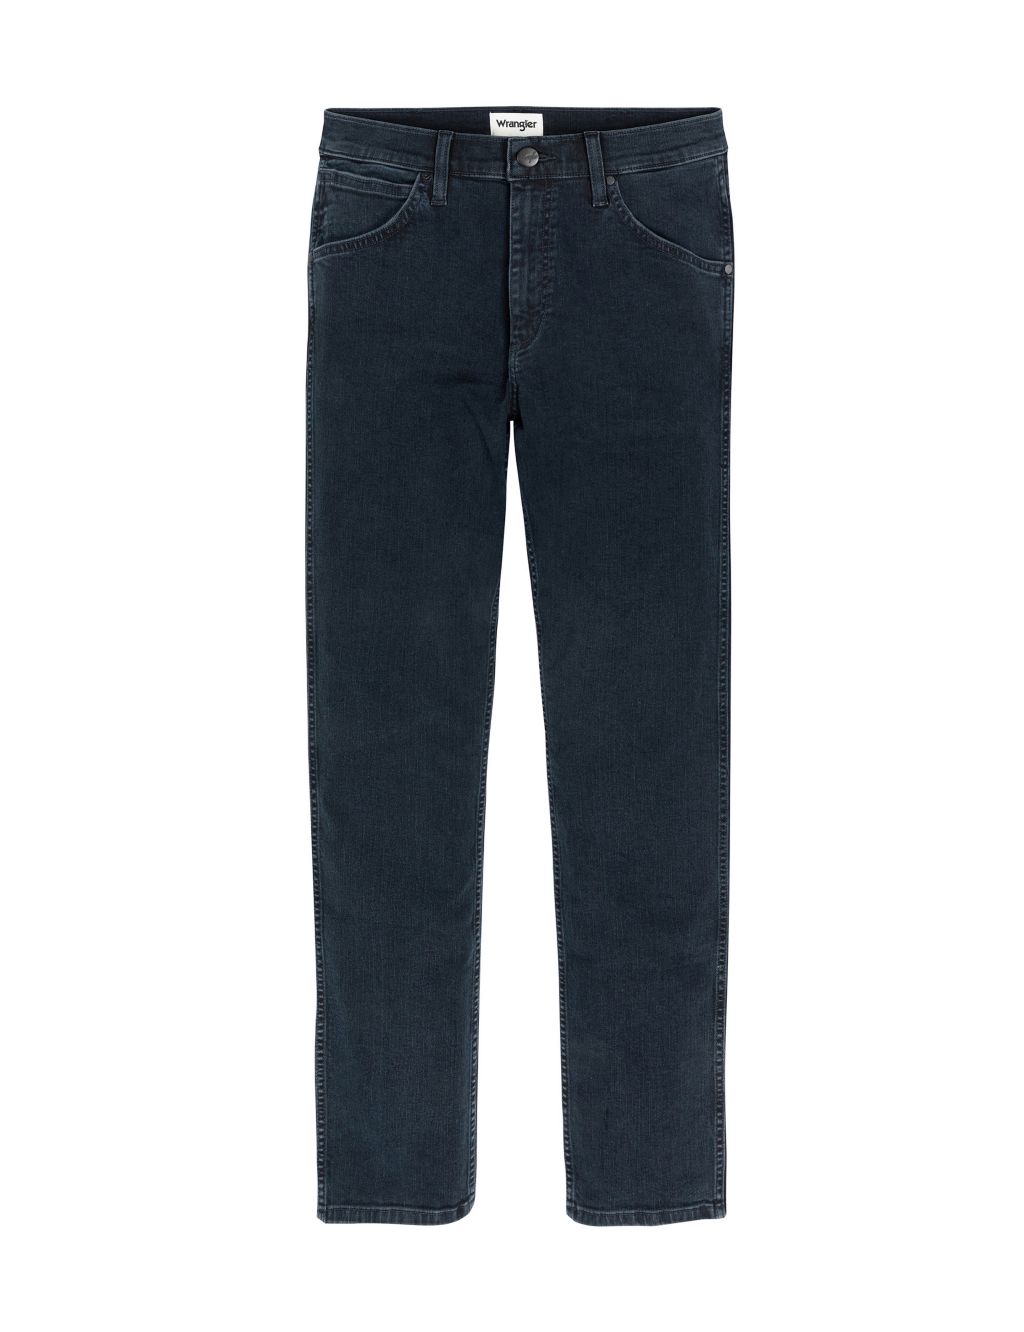 Greensboro Regular Straight Fit Jeans | Wrangler | M&S